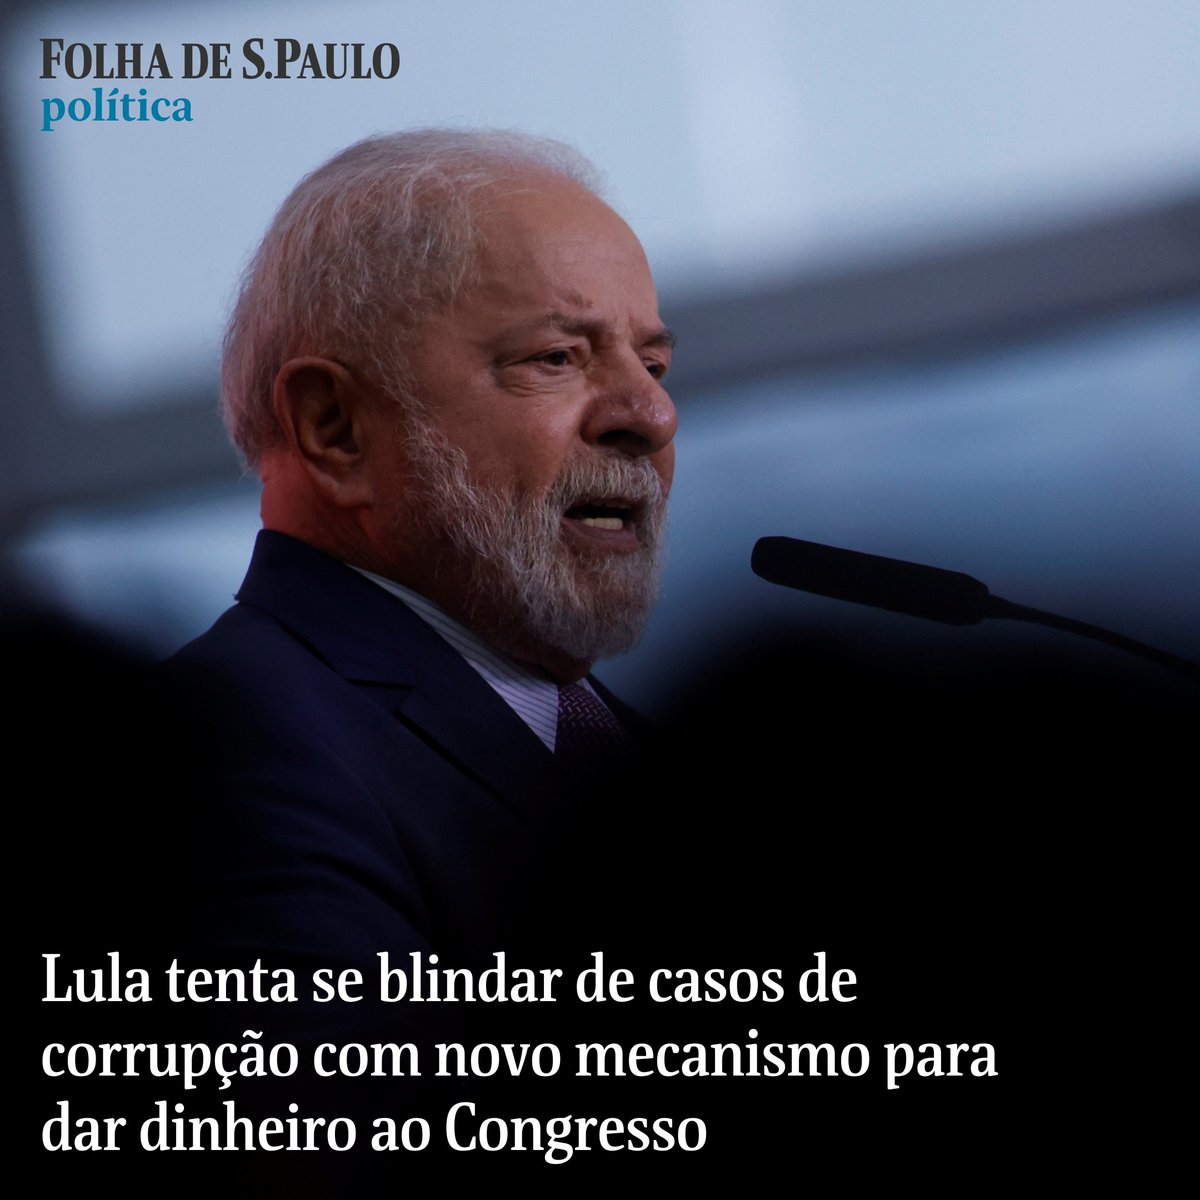 Lula tenta se blindar de casos de corrupção com novo mecanismo para dar dinheiro ao Congresso. Nova verba de R$ 9,8 bilhões simula emendas parlamentares; governo quer divulgar padrinhos para conter eventuais desgastes 📰📲 Leia: mla.bs/39c49ca4 📝@thiago__resende